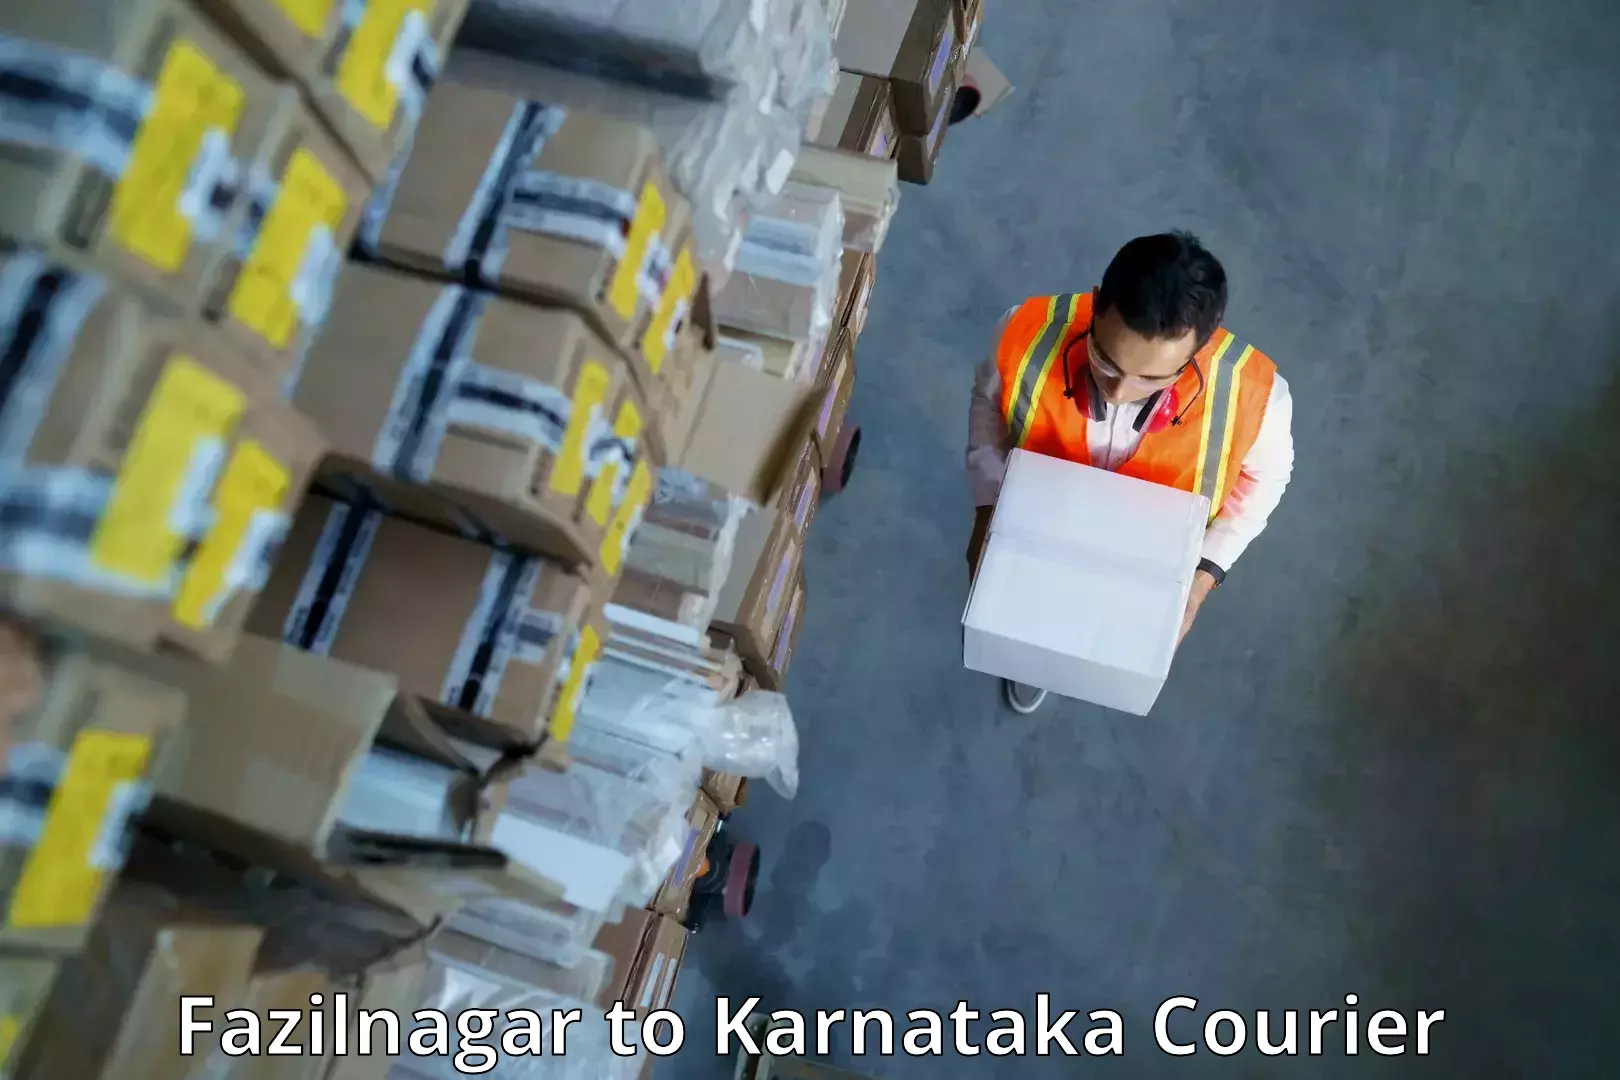 High-speed parcel service Fazilnagar to Kulshekar